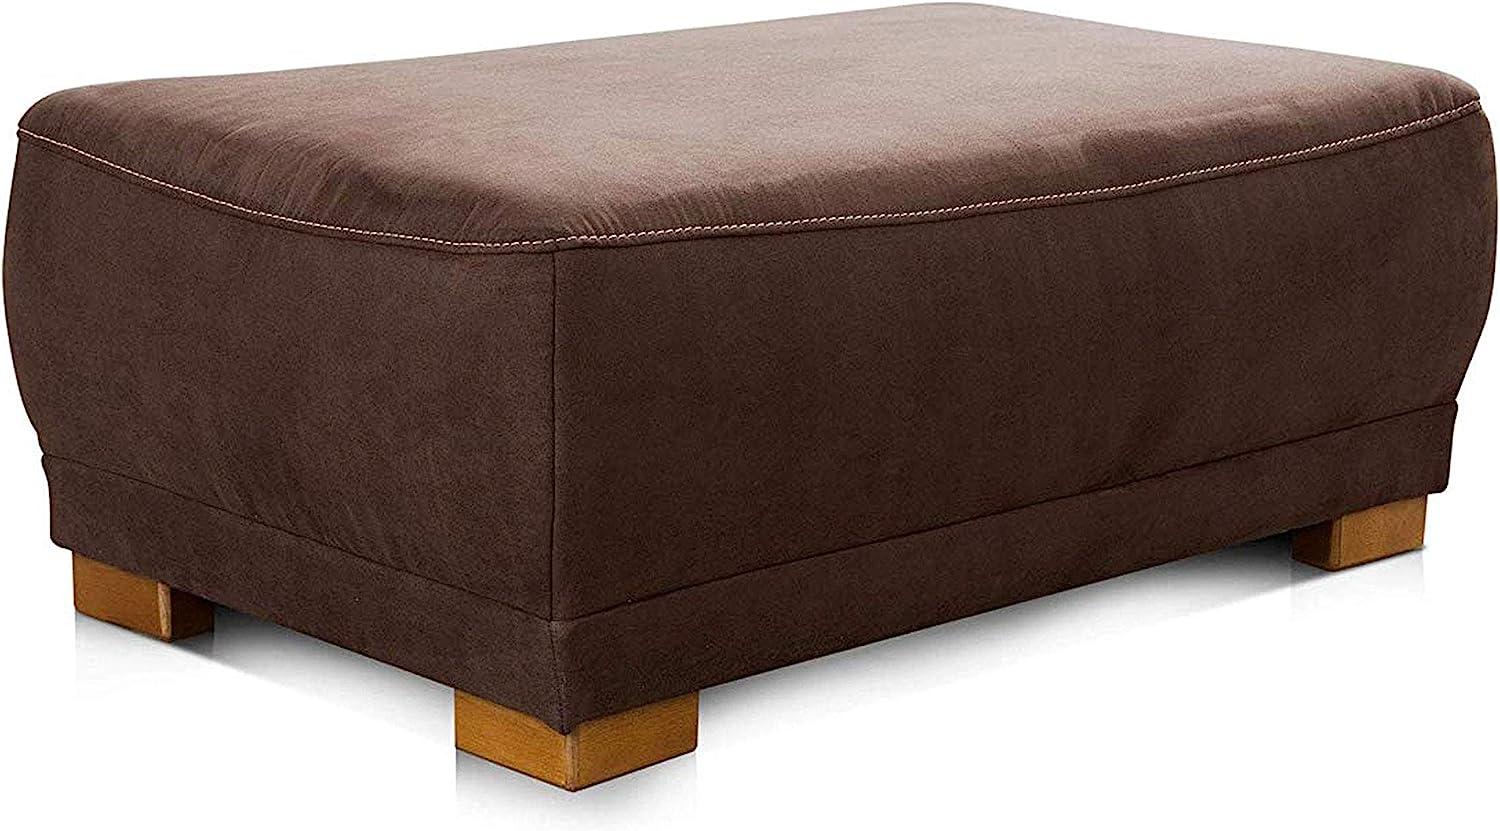 Cavadore Sofa-Hocker "Modeo" / Sitzhocker für Sofa mit moderner Kontrastnaht / Hochwertiger Mikrofaser-Bezug in Wildlederoptik / Holzfüße / Maße: 100x40x66 cm (BxHxT) / Farbe: Braun Bild 1